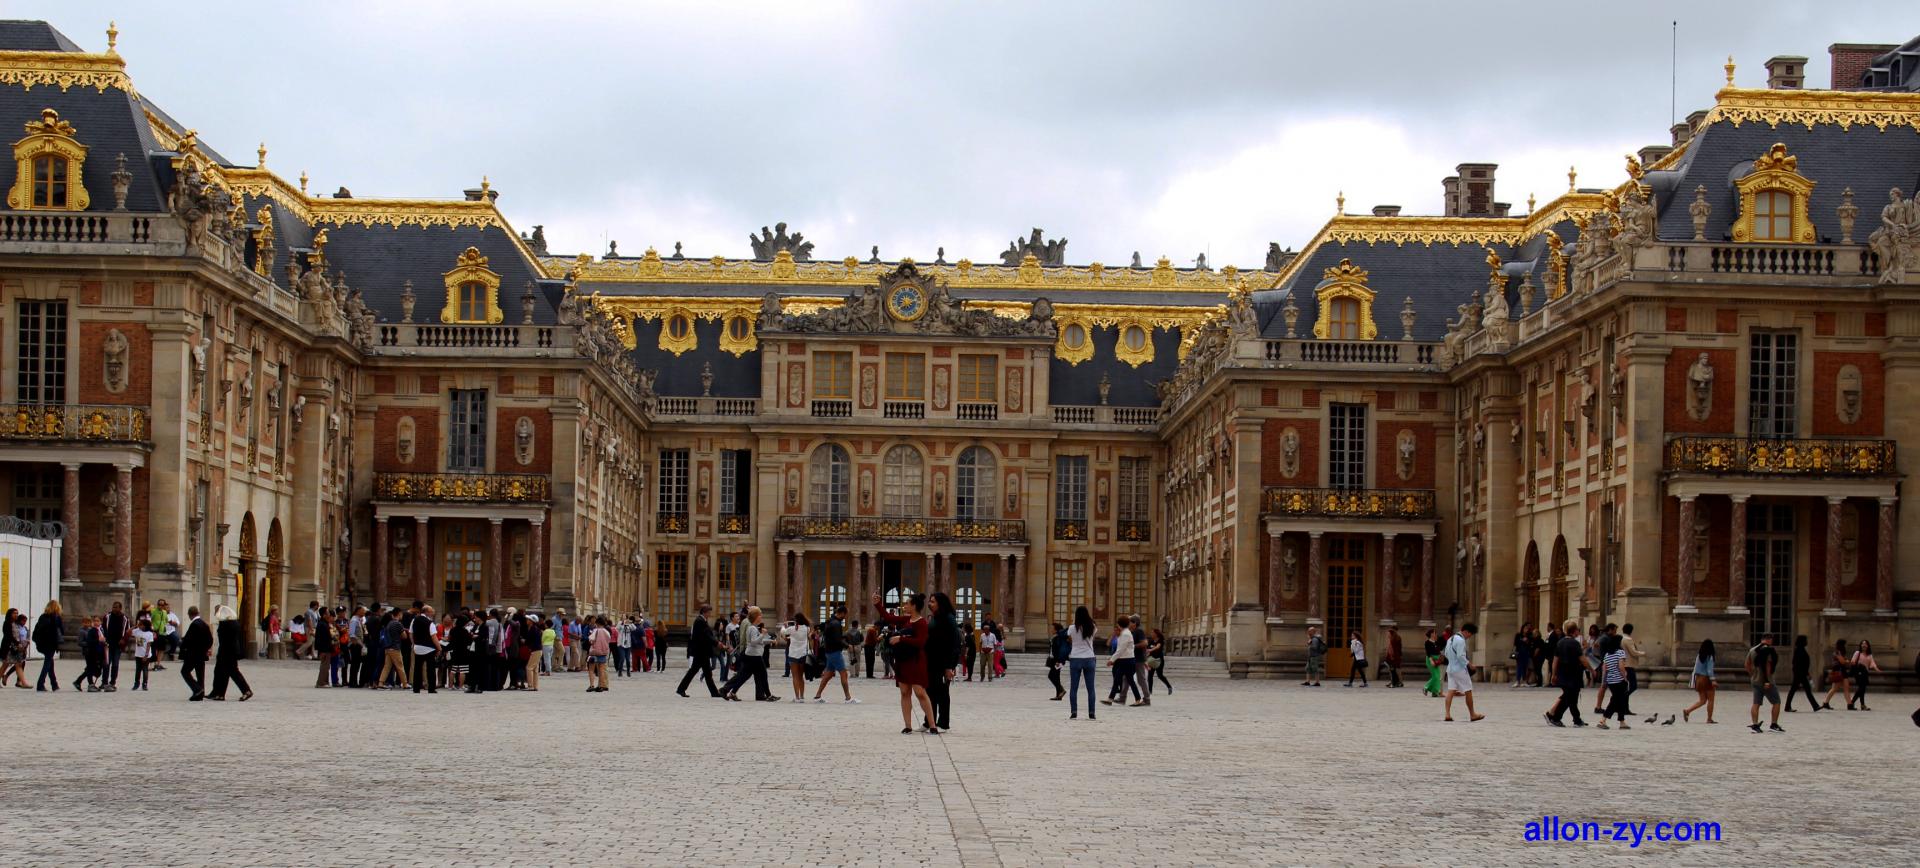 La cour du Château de Versailles